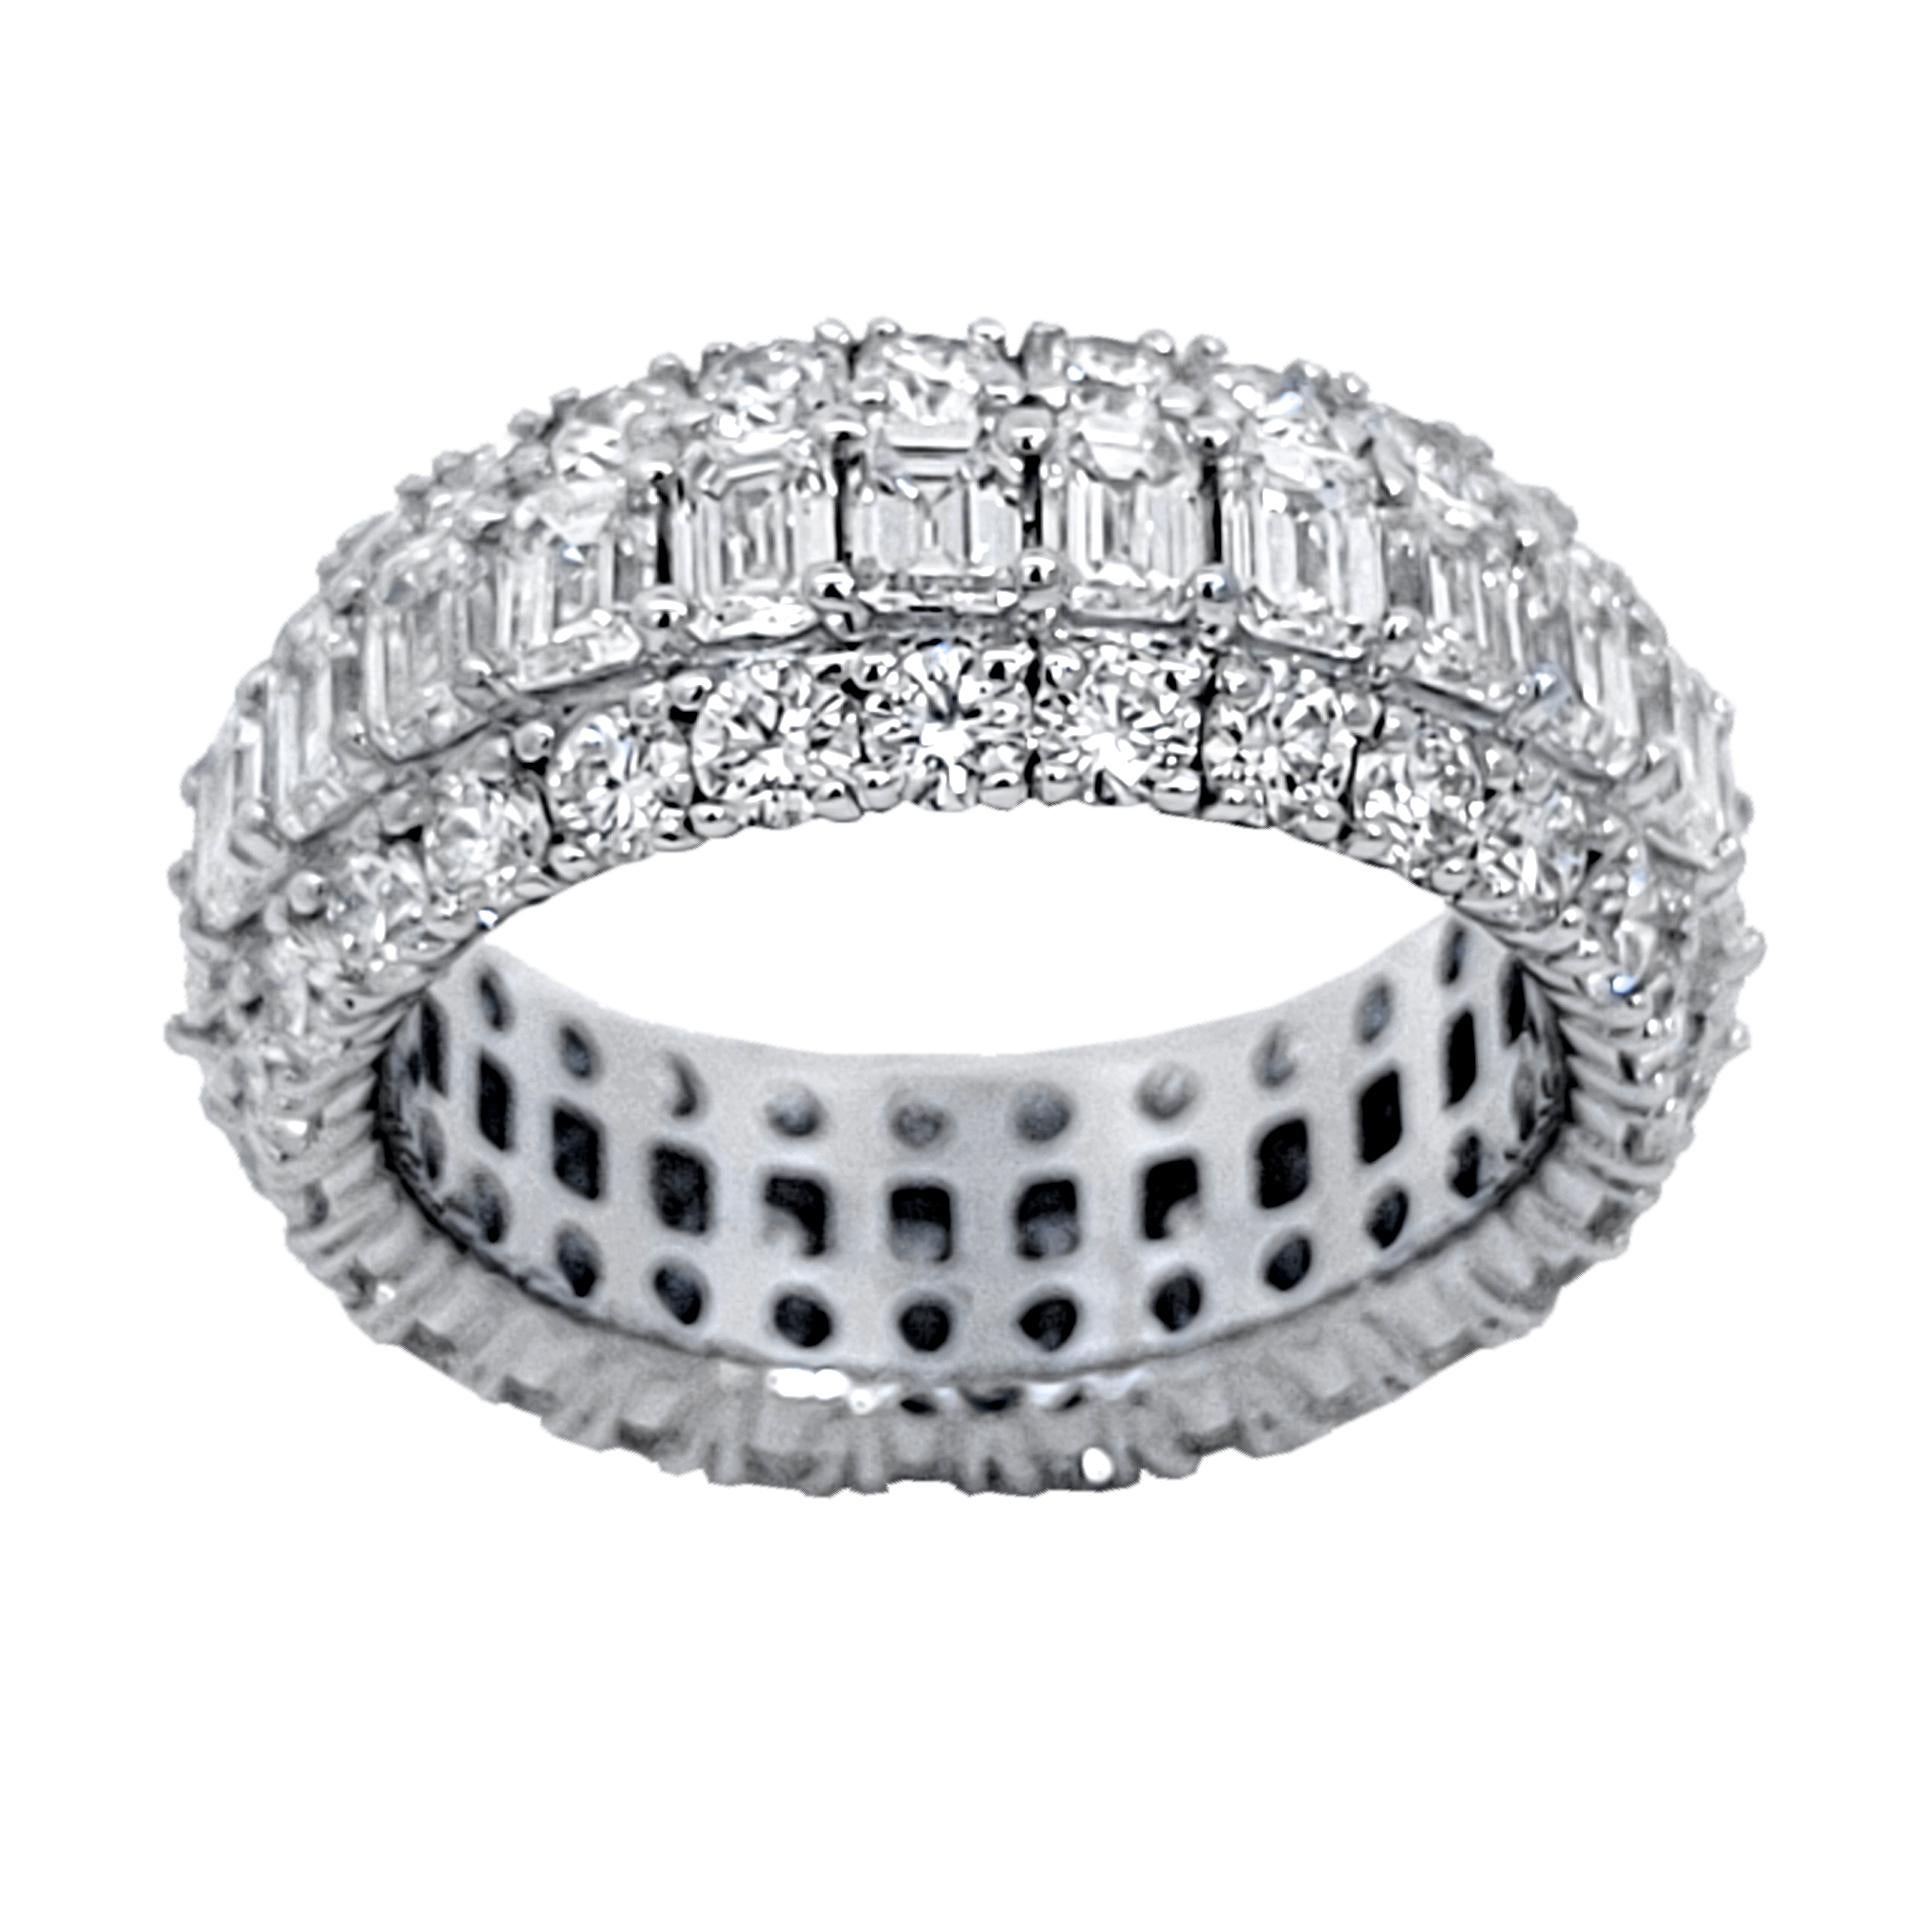 Faites l'expérience d'une sophistication intemporelle avec ce superbe bracelet éternel en diamant. Parfaitement conçu pour symboliser l'amour éternel, son cercle complet de diamants scintillants respire le luxe et l'élégance, ce qui en fait la